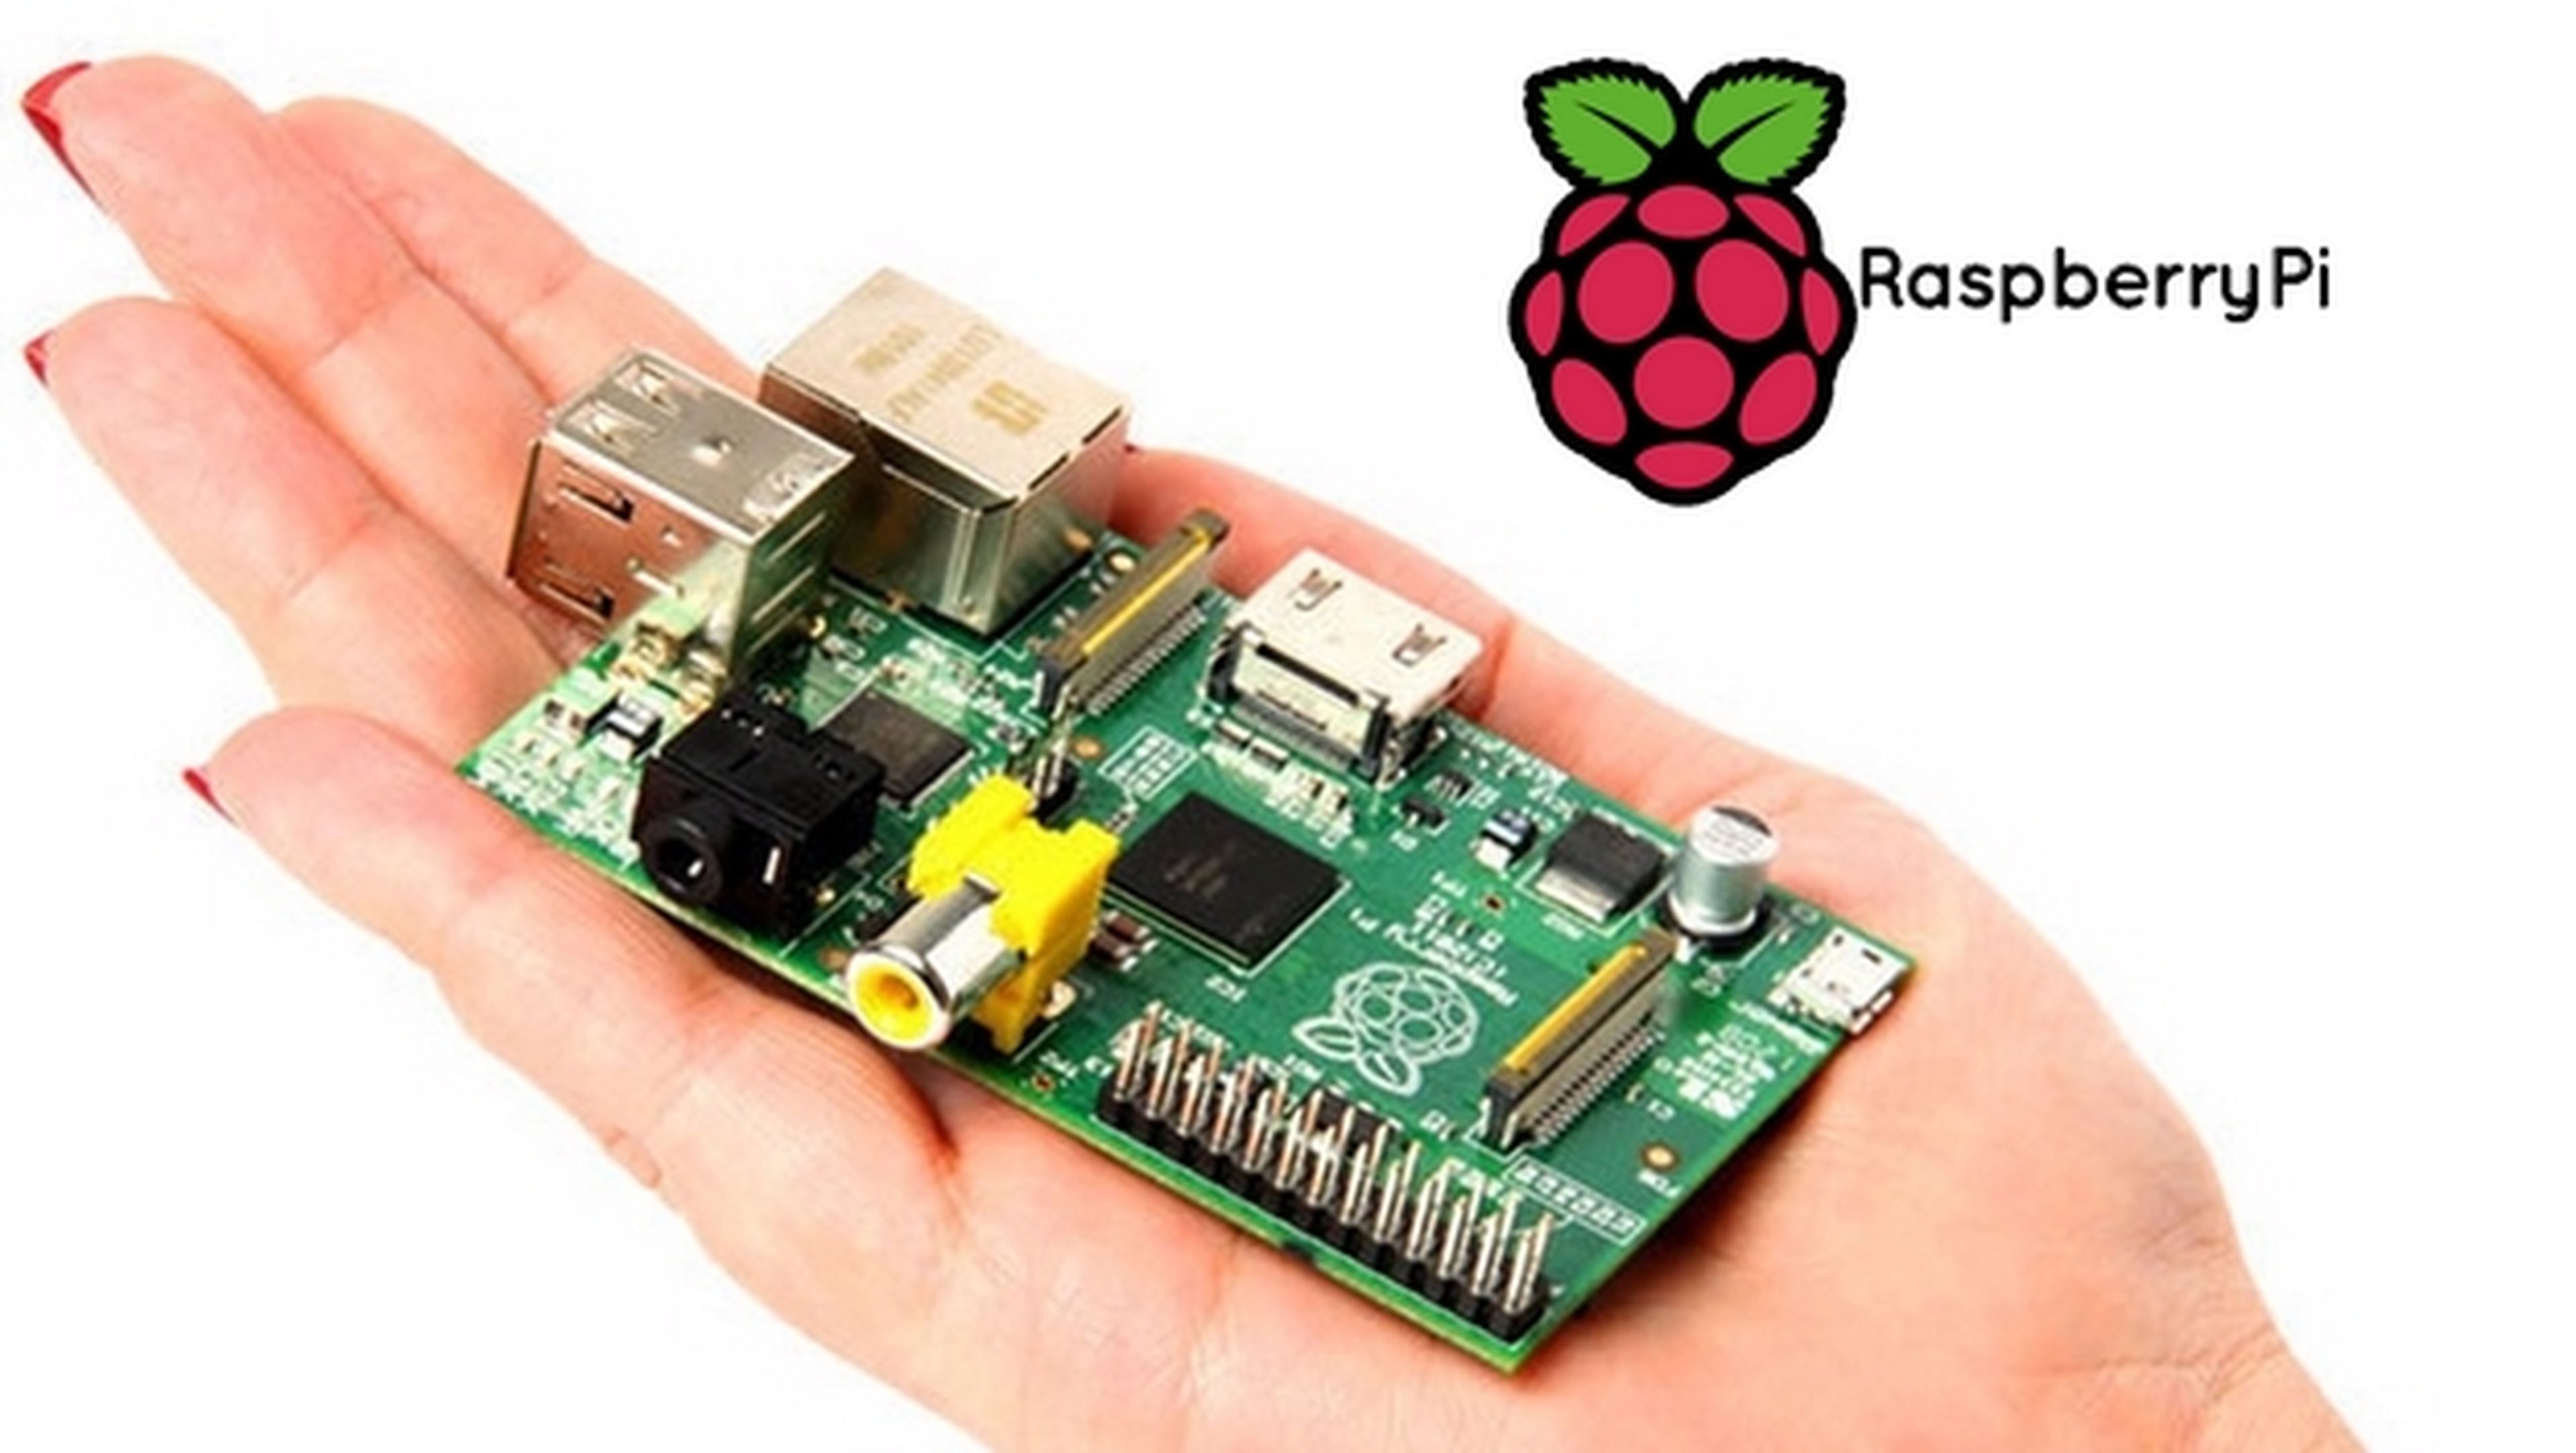 tugurio considerado fórmula Raspberry Pi: ¿Qué modelo me compro? | Computer Hoy